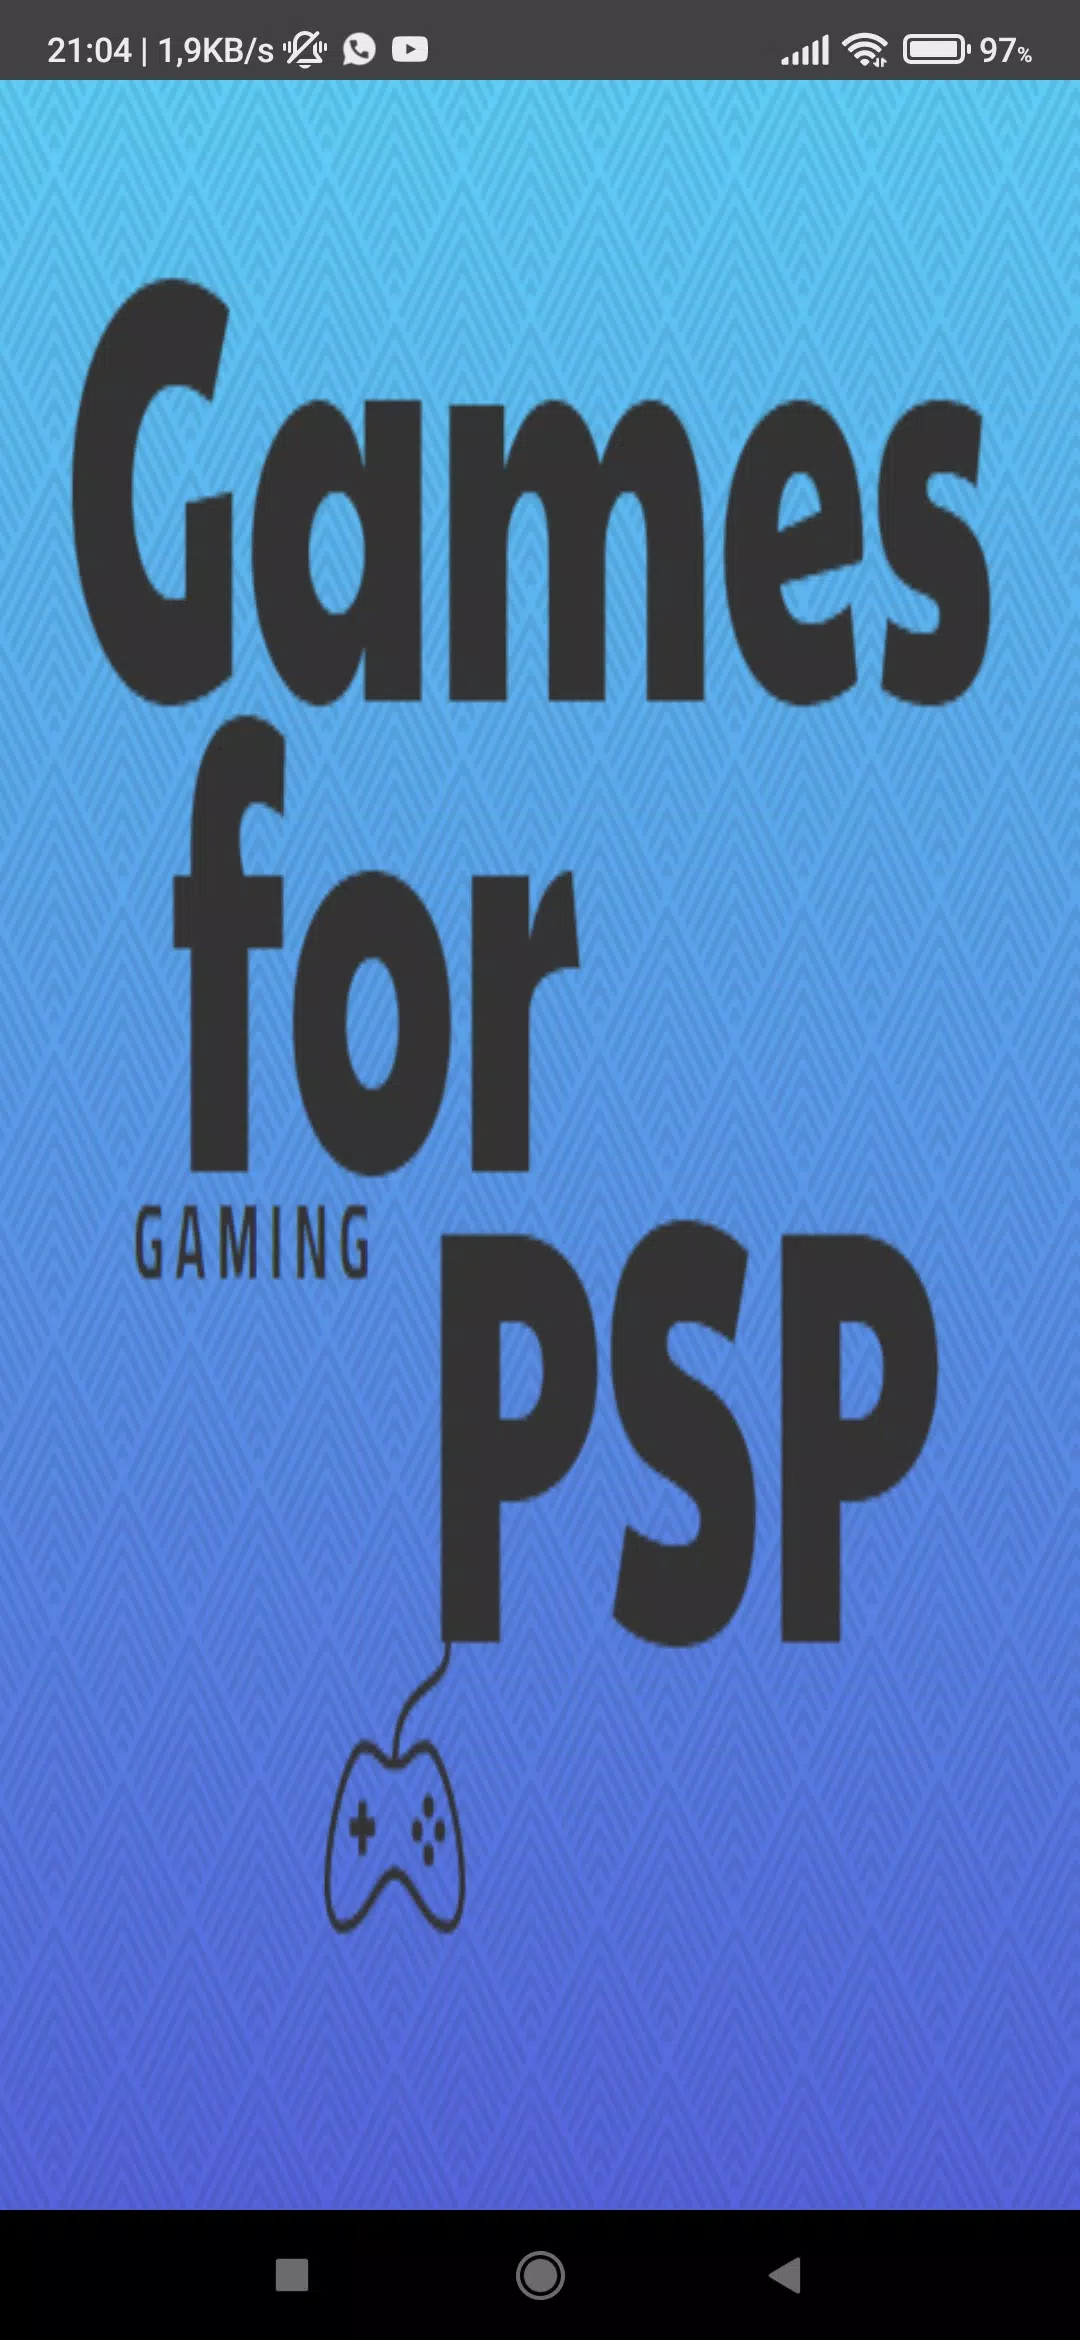 Baixar jogos da ppsspp grátis - Meus jogos novos da PPSSPP😎😎😎😎😎😎